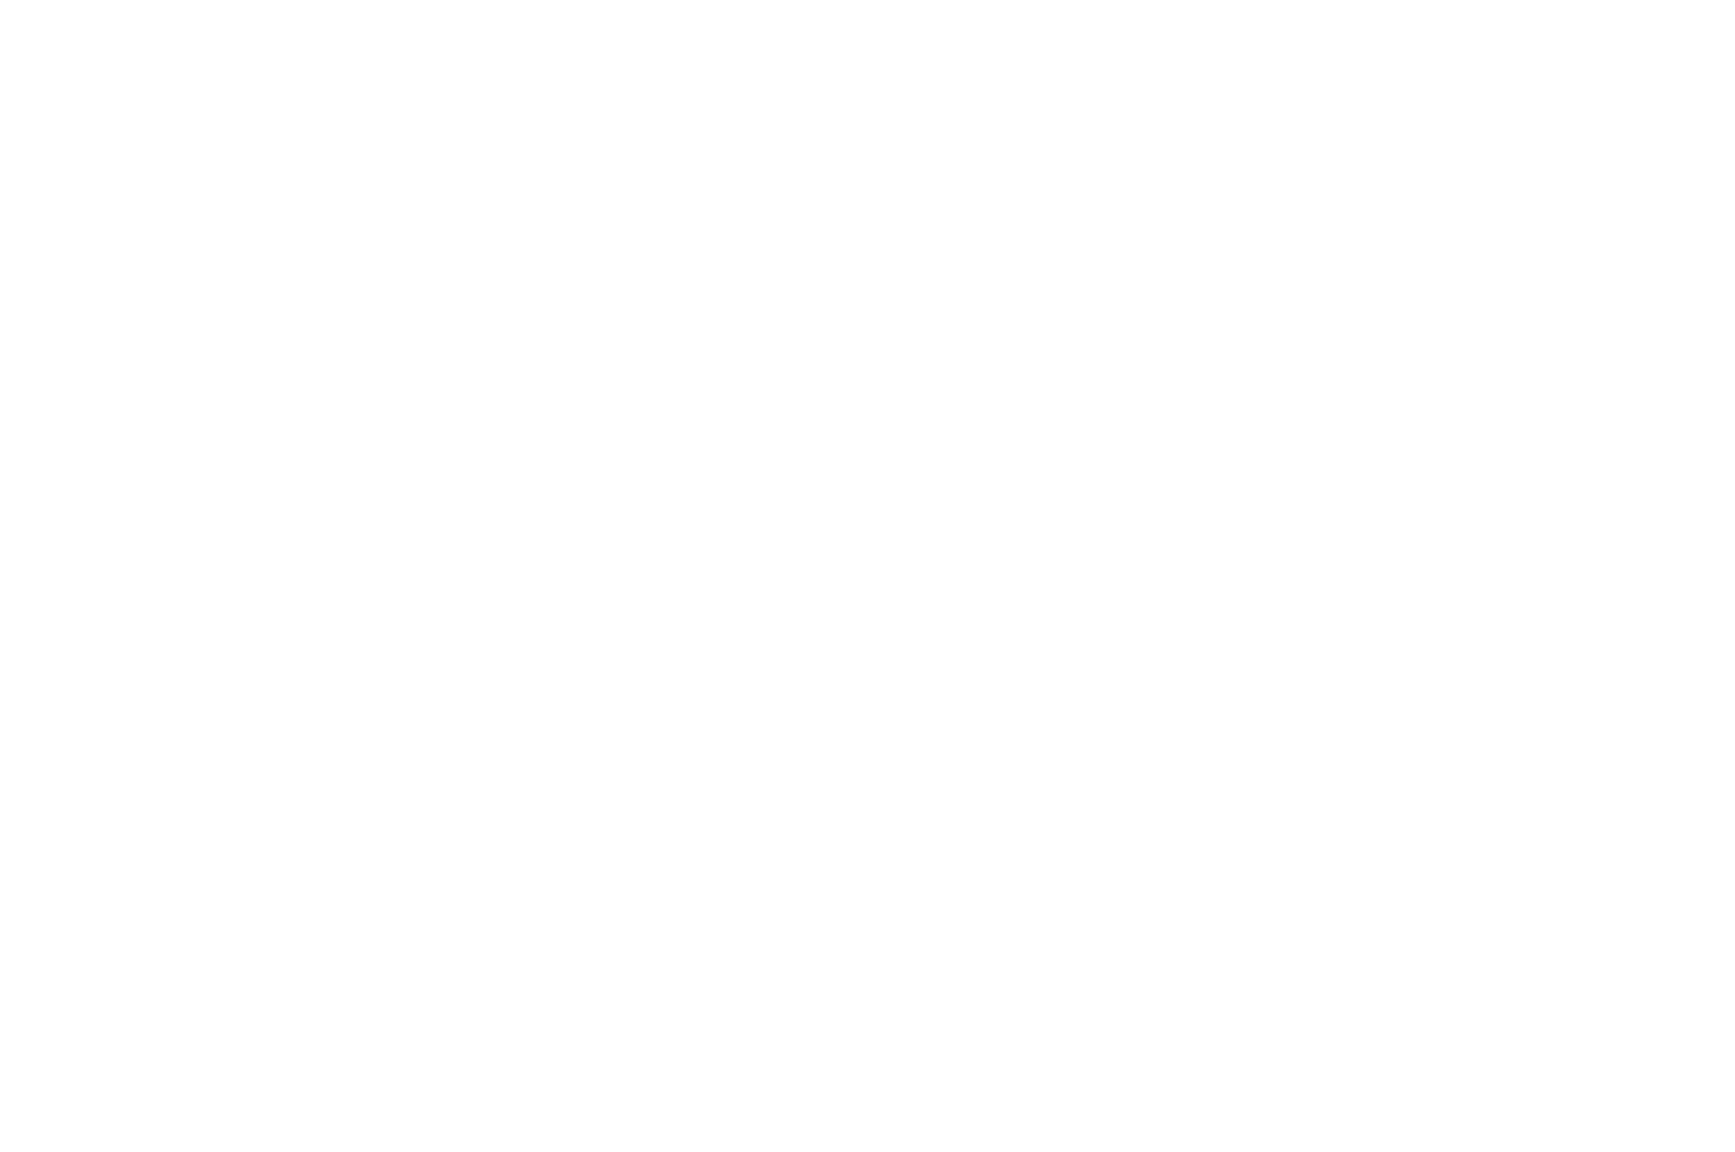 Winner - Best Director - TRAVEL FILM International Film Festival - 2023